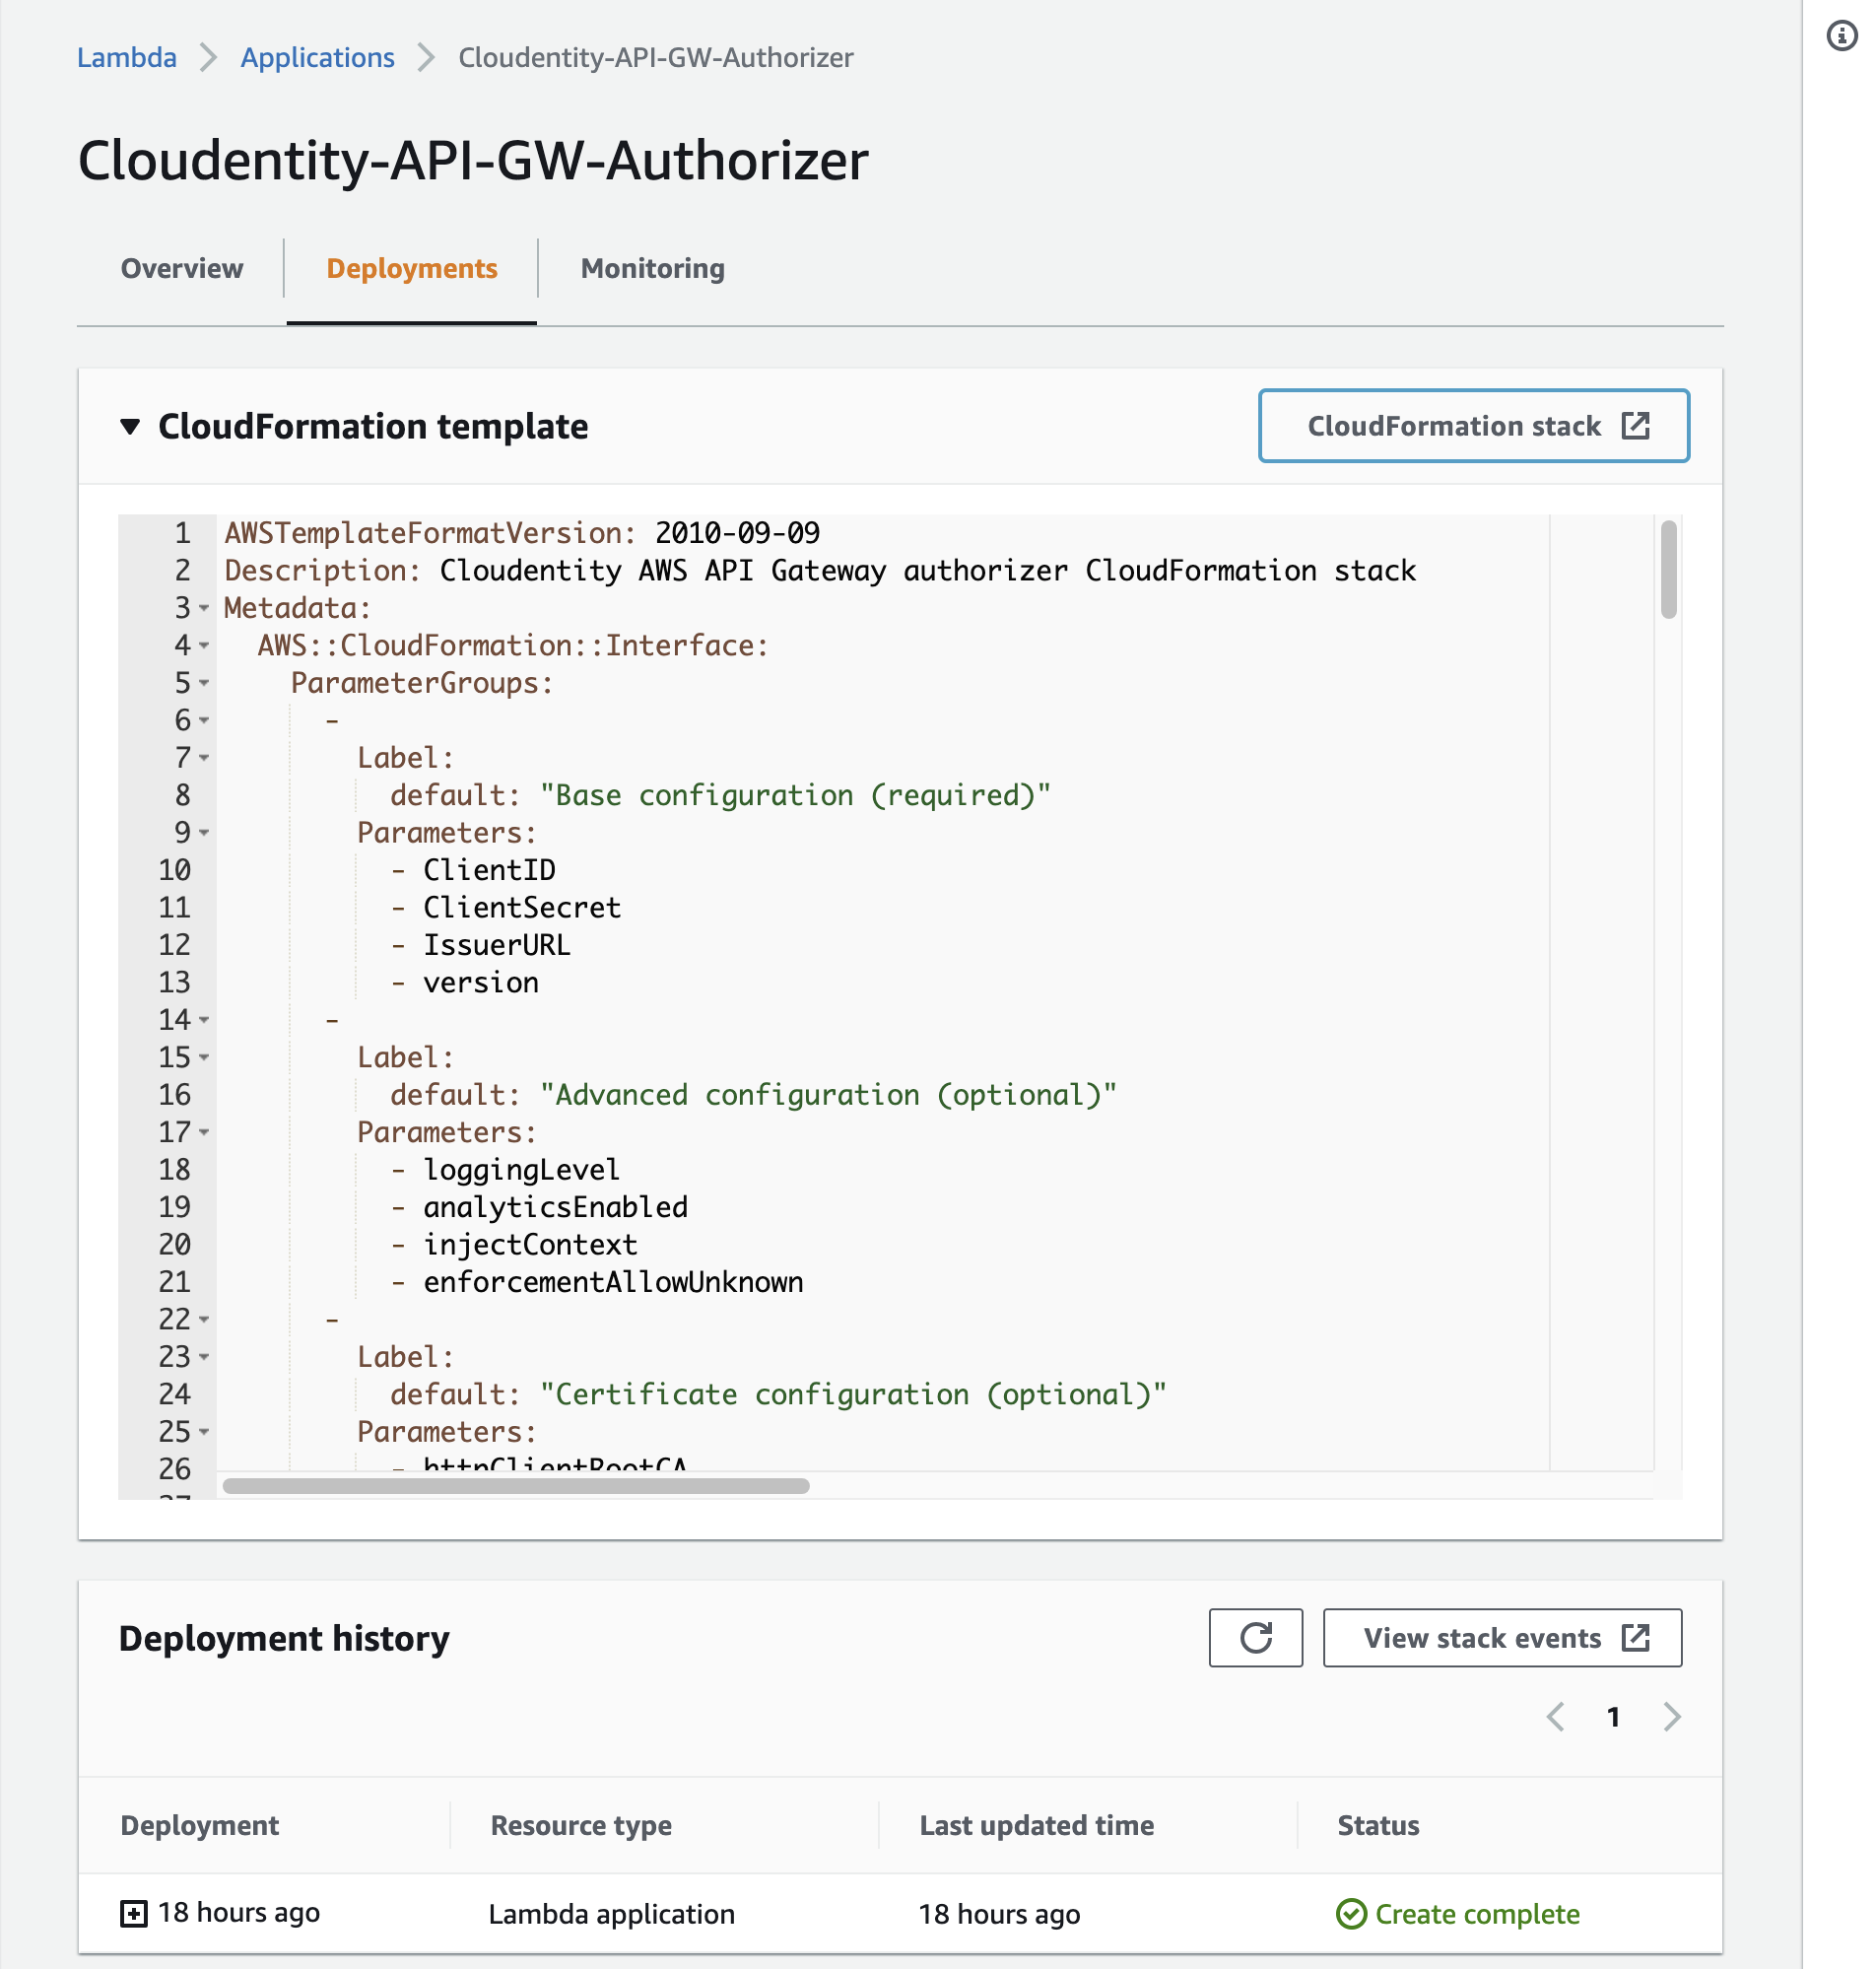 Cloudformation - Authorizer deployed